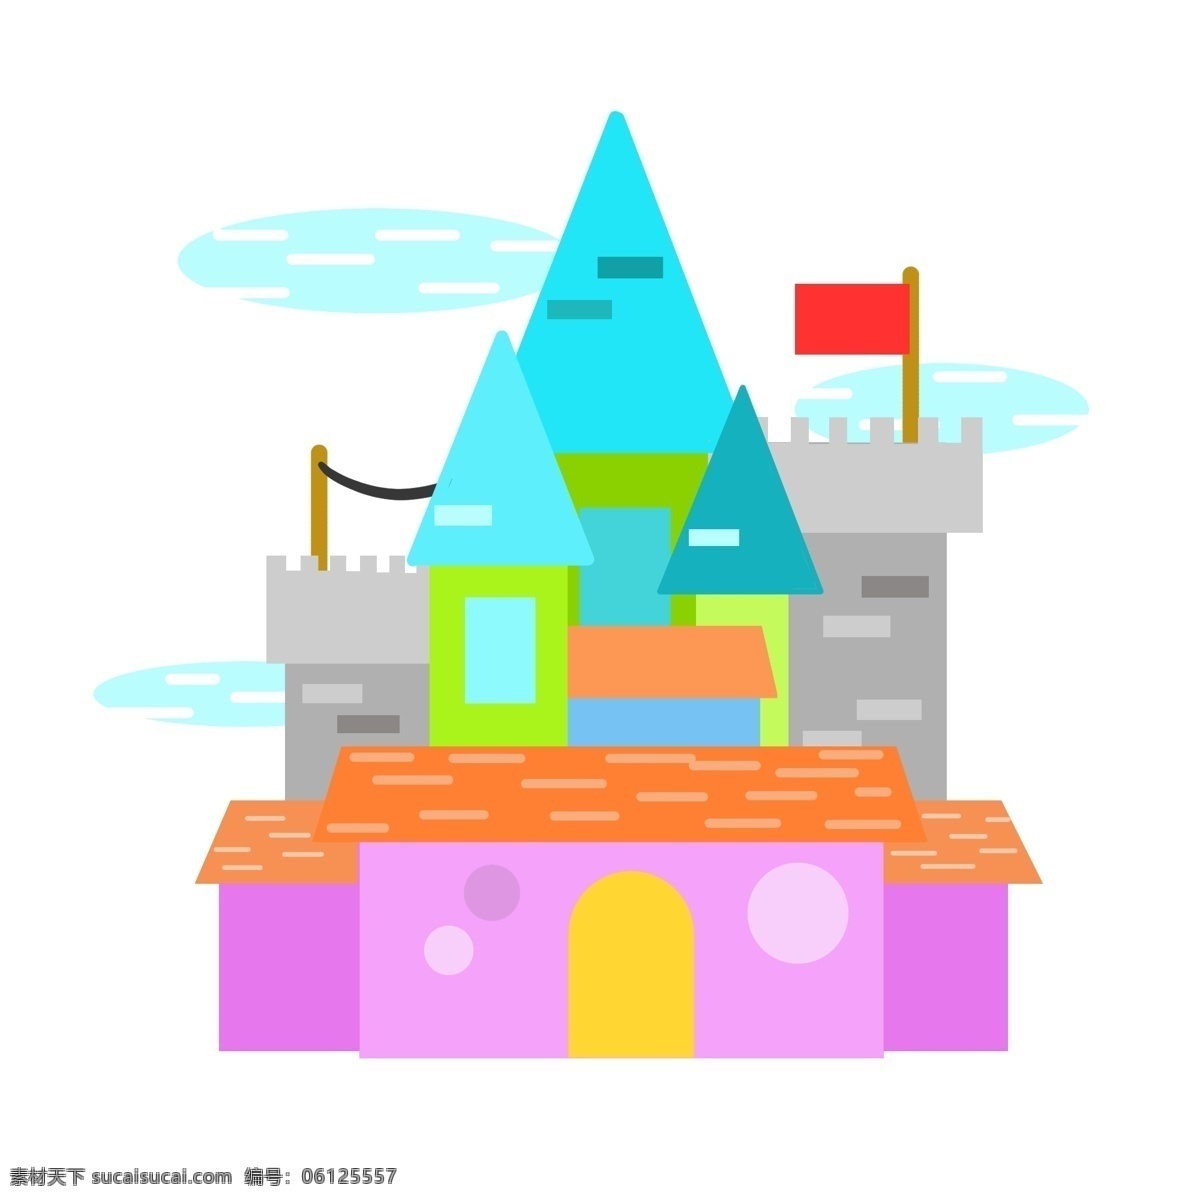 蓝色 建筑 城堡 插画 蓝色的房子 卡通插画 城堡插画 建筑插画 房子插画 古老城堡 尖尖的房顶